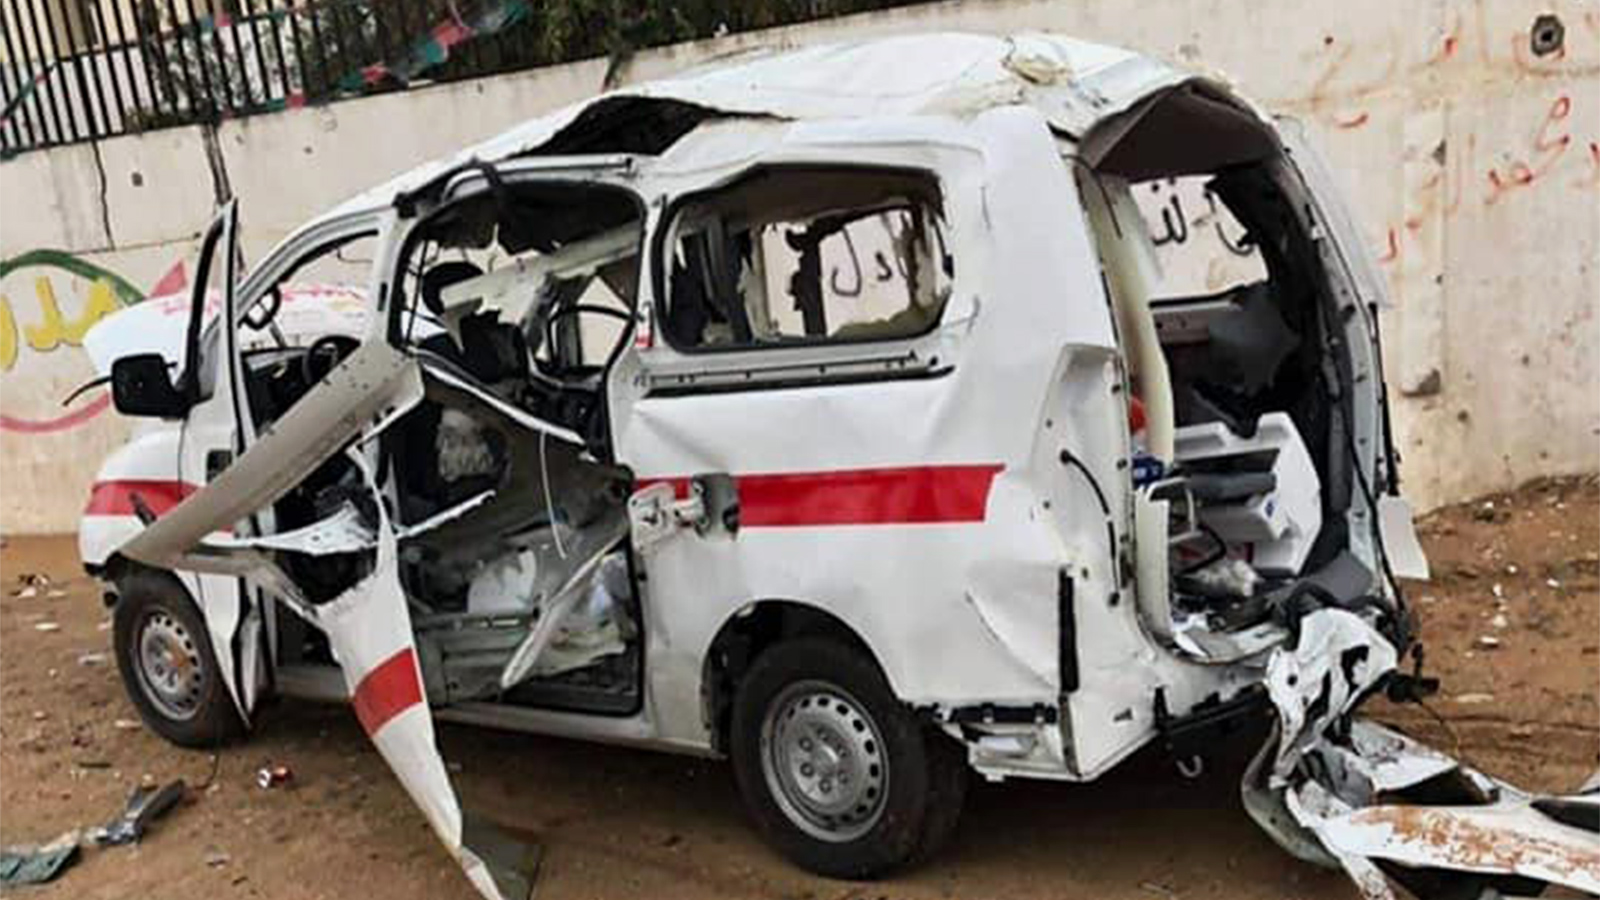 ‪سيارة إسعاف تتعرض للاستهداف في أحد محاور القتال جنوب طرابلس وإصابة مسعفين كانوا على متنها‬ (ناشطون)